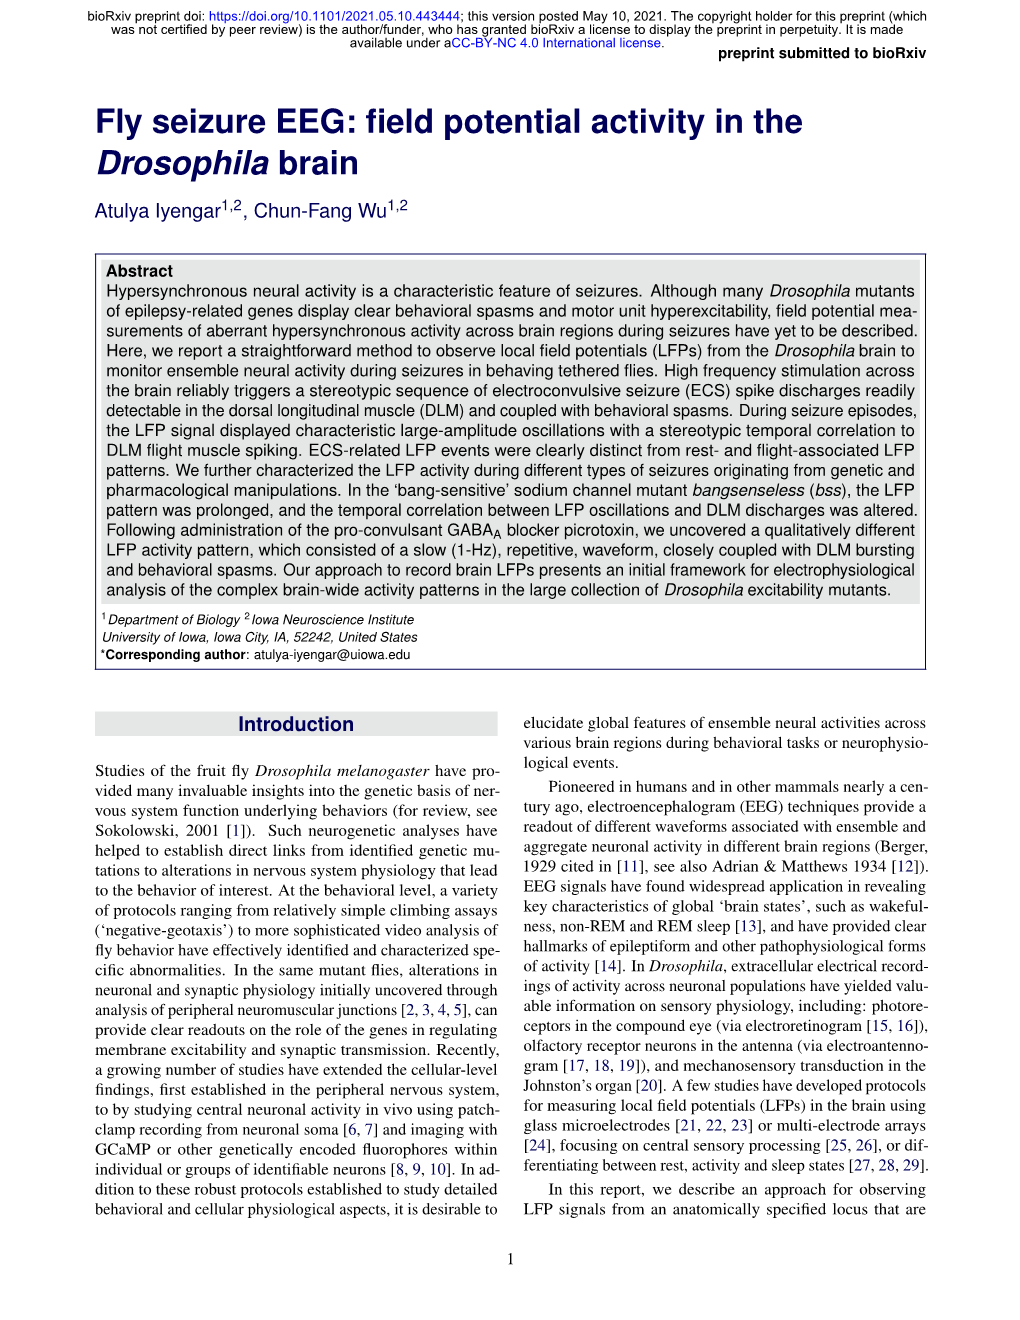 Fly Seizure EEG: Field Potential Activity in the Drosophila Brain